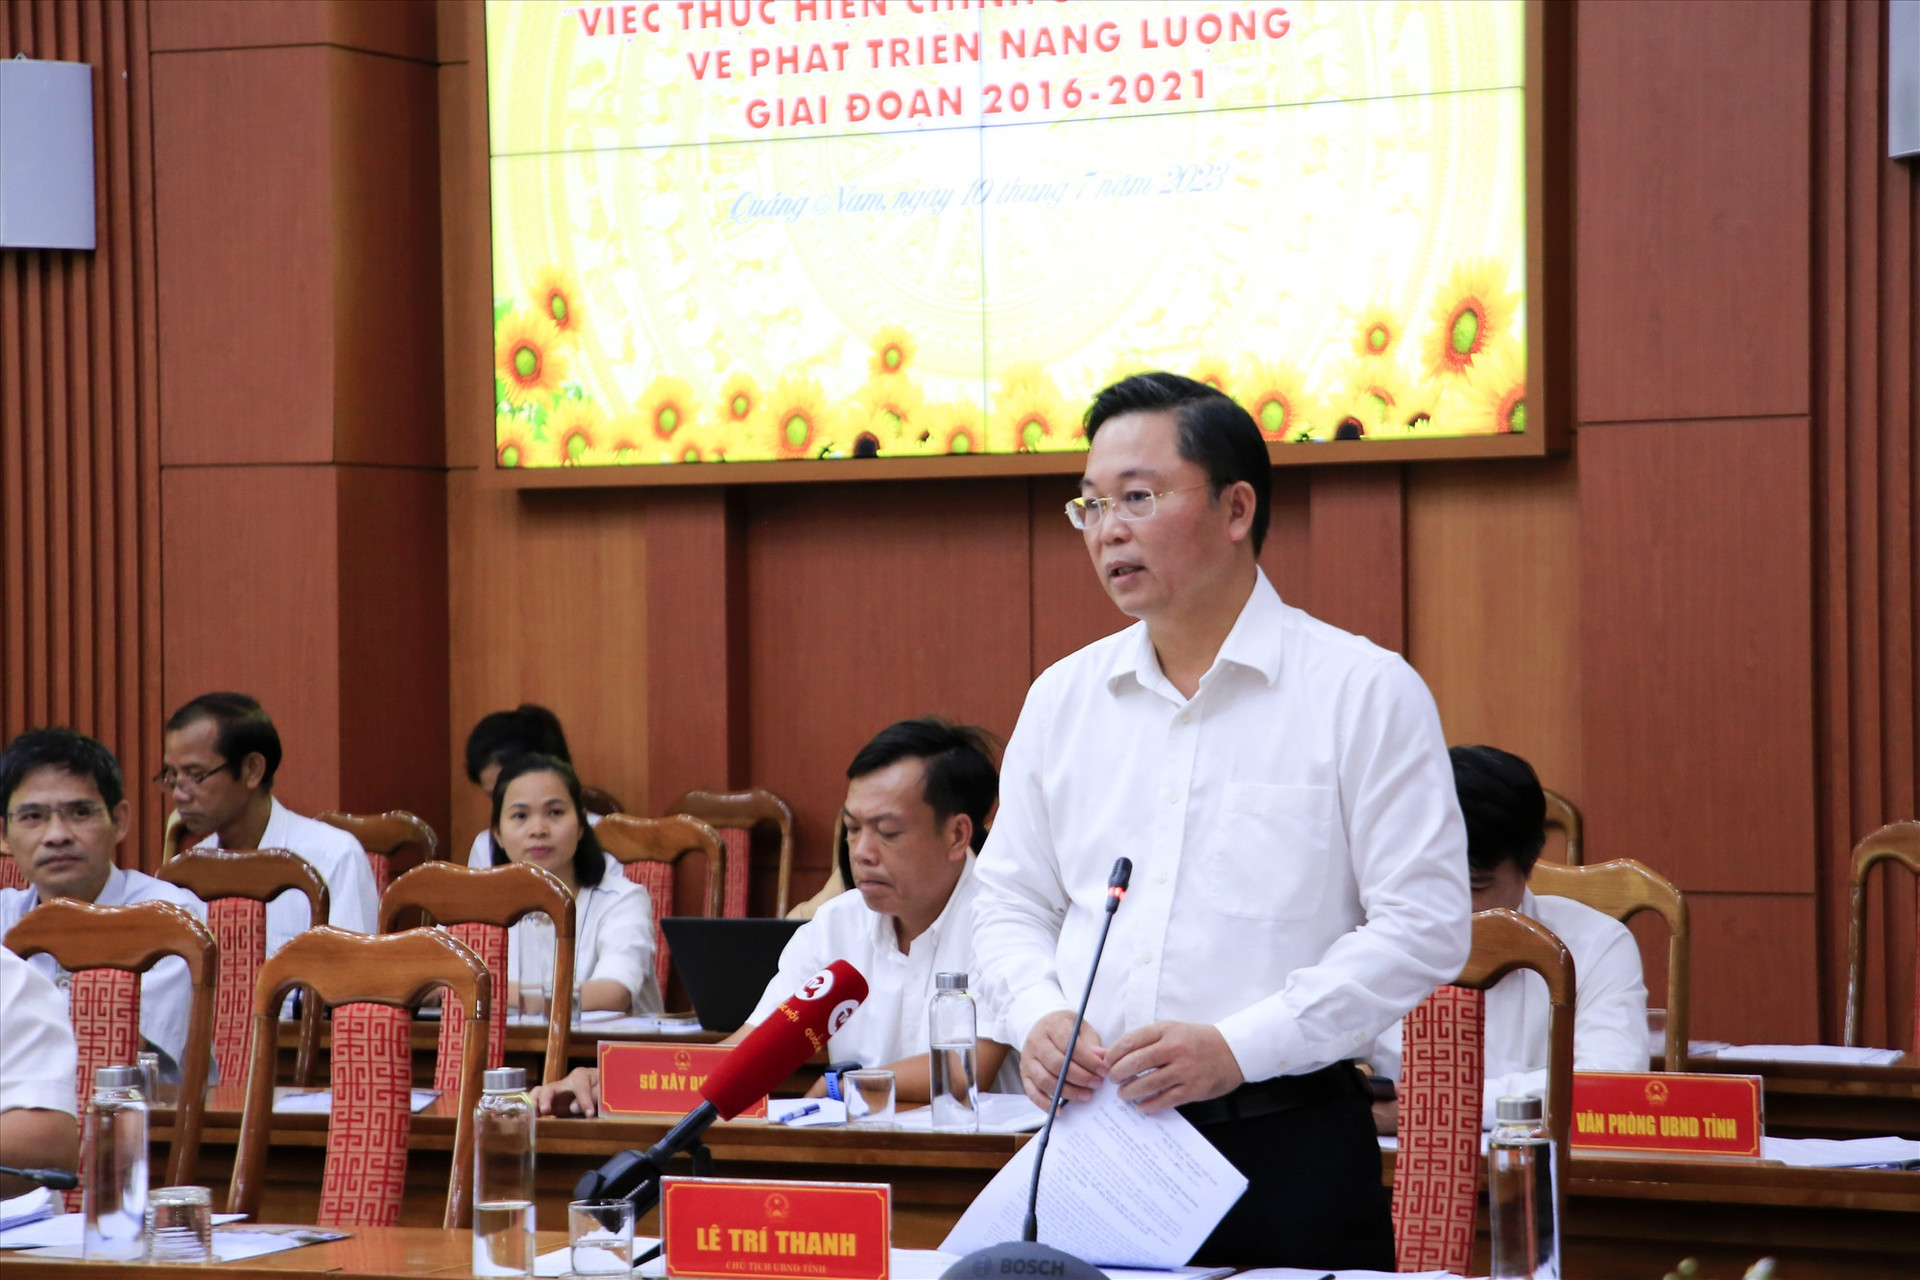 Chủ tịch UBND tỉnh Lê Trí Thanh kiến nghị cần có cơ chế hỗ trợ doanh nghiệp, đặc biệt là doanh nghiệp du lịch để phục hồi sau khó khăn. Ảnh: T.C